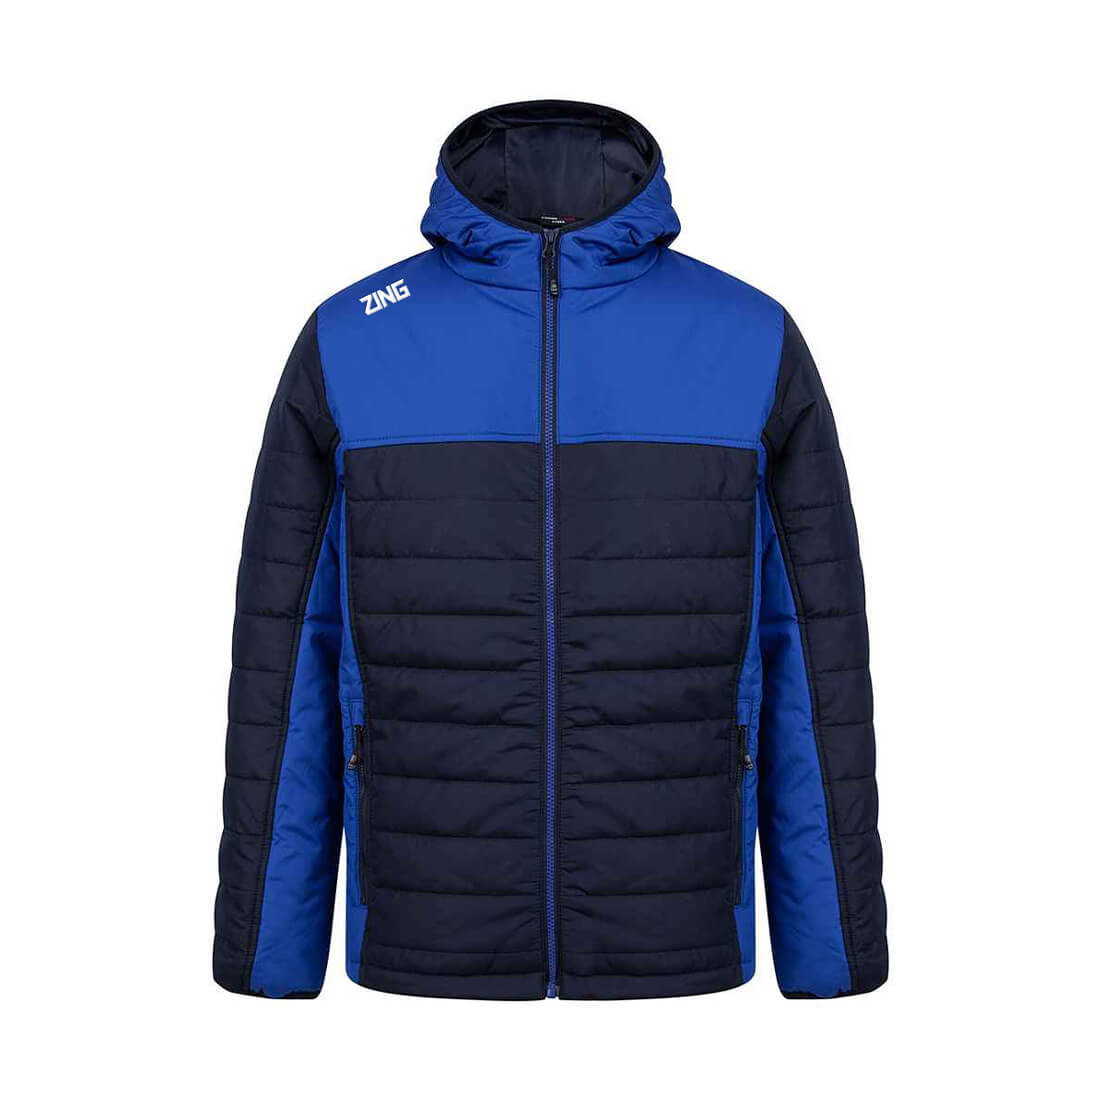 ZING Sportswear Match Jacket | Training Kit and Teamwear - Match Blue